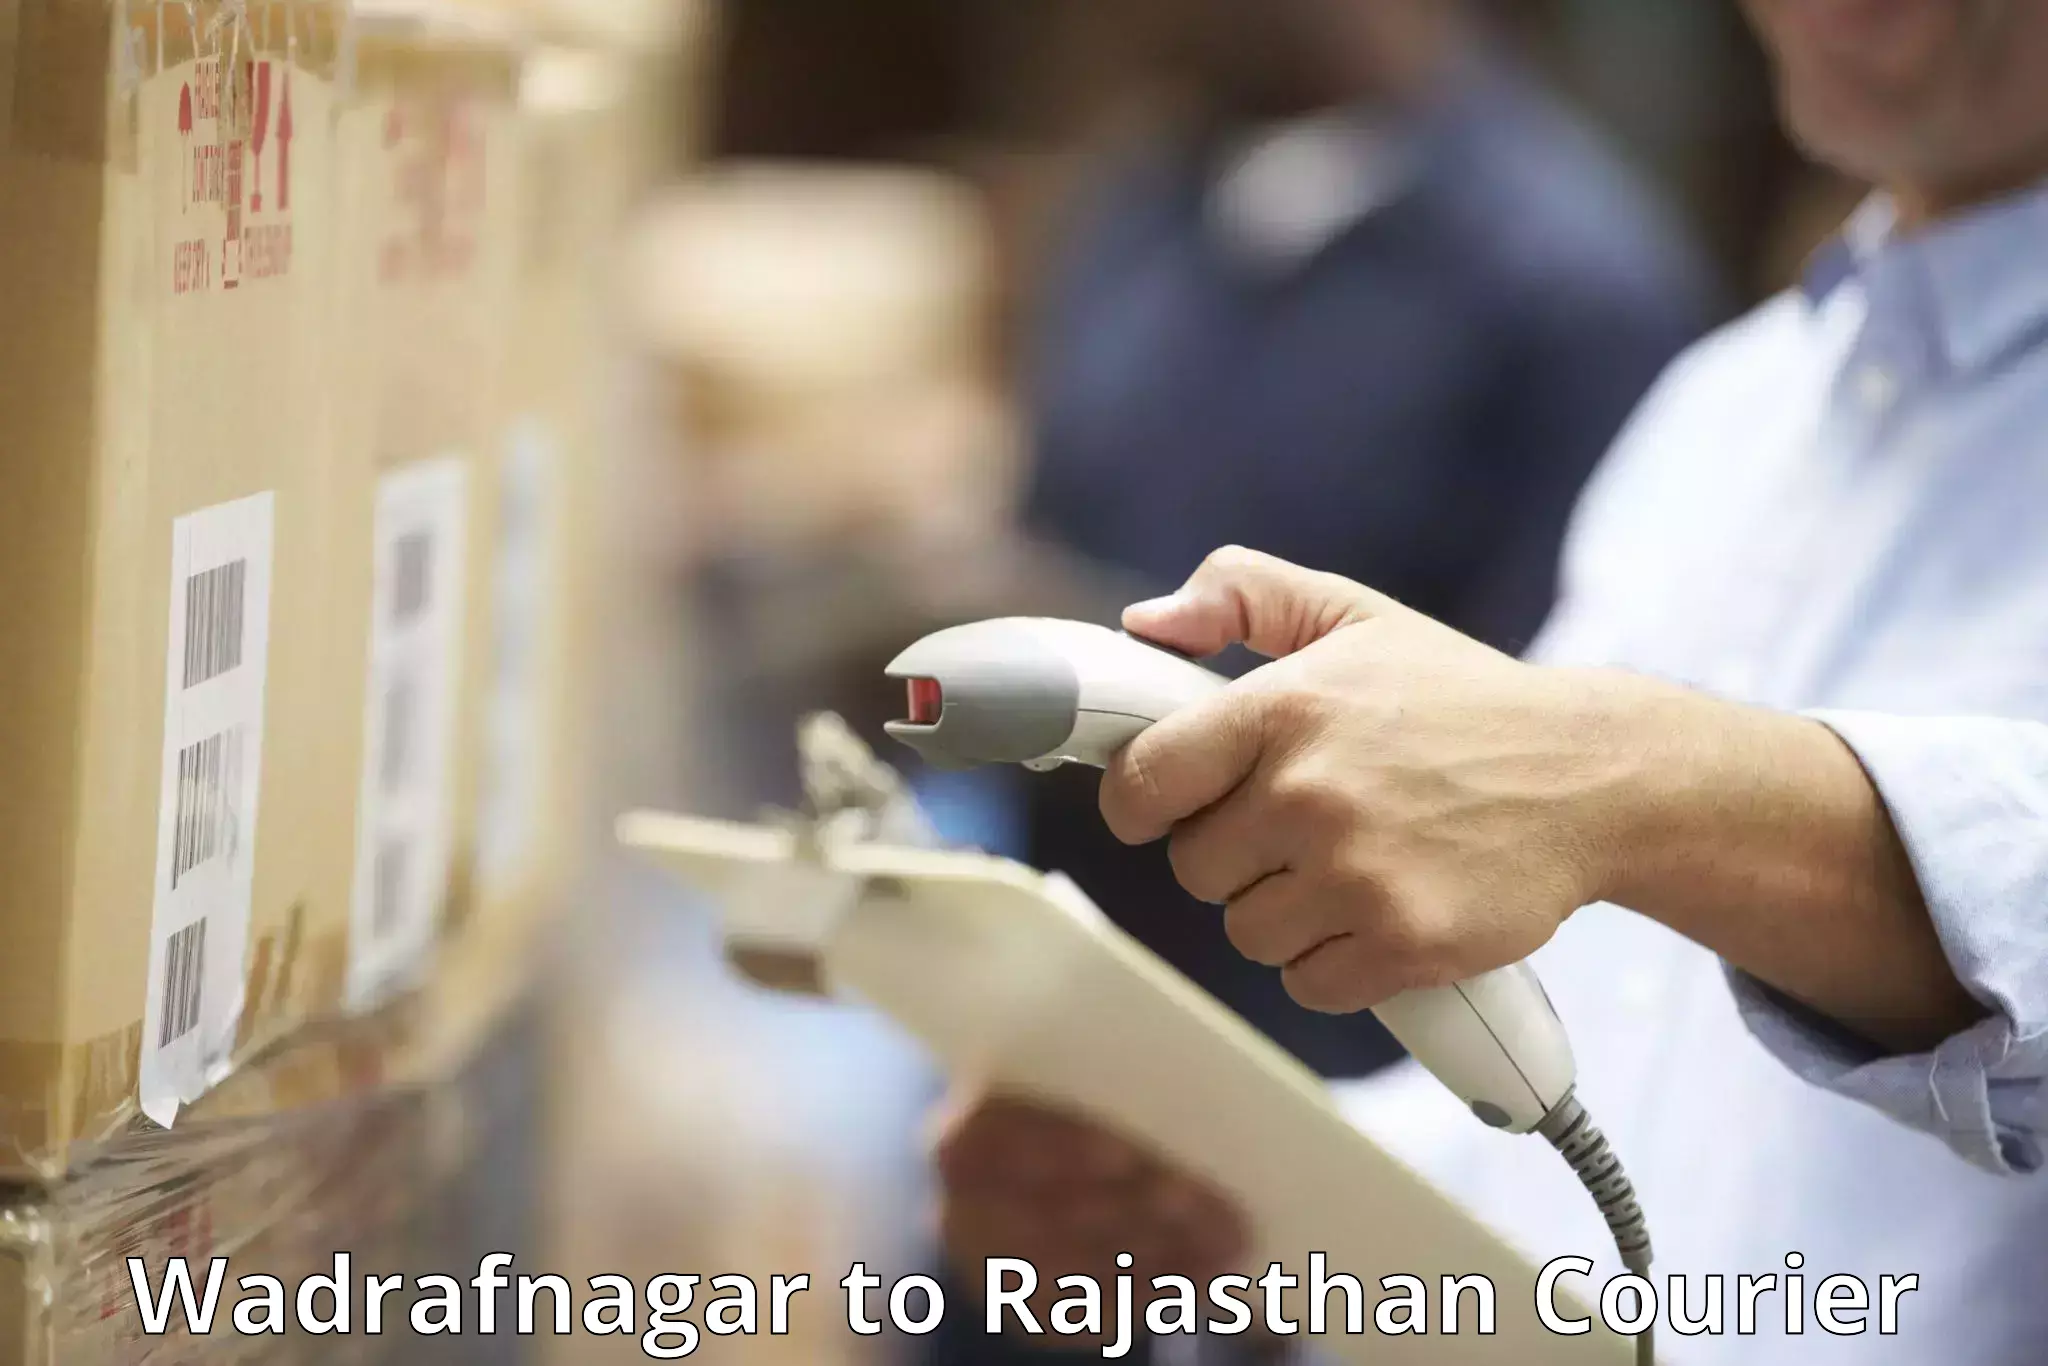 Luggage shipping specialists Wadrafnagar to Rajasthan